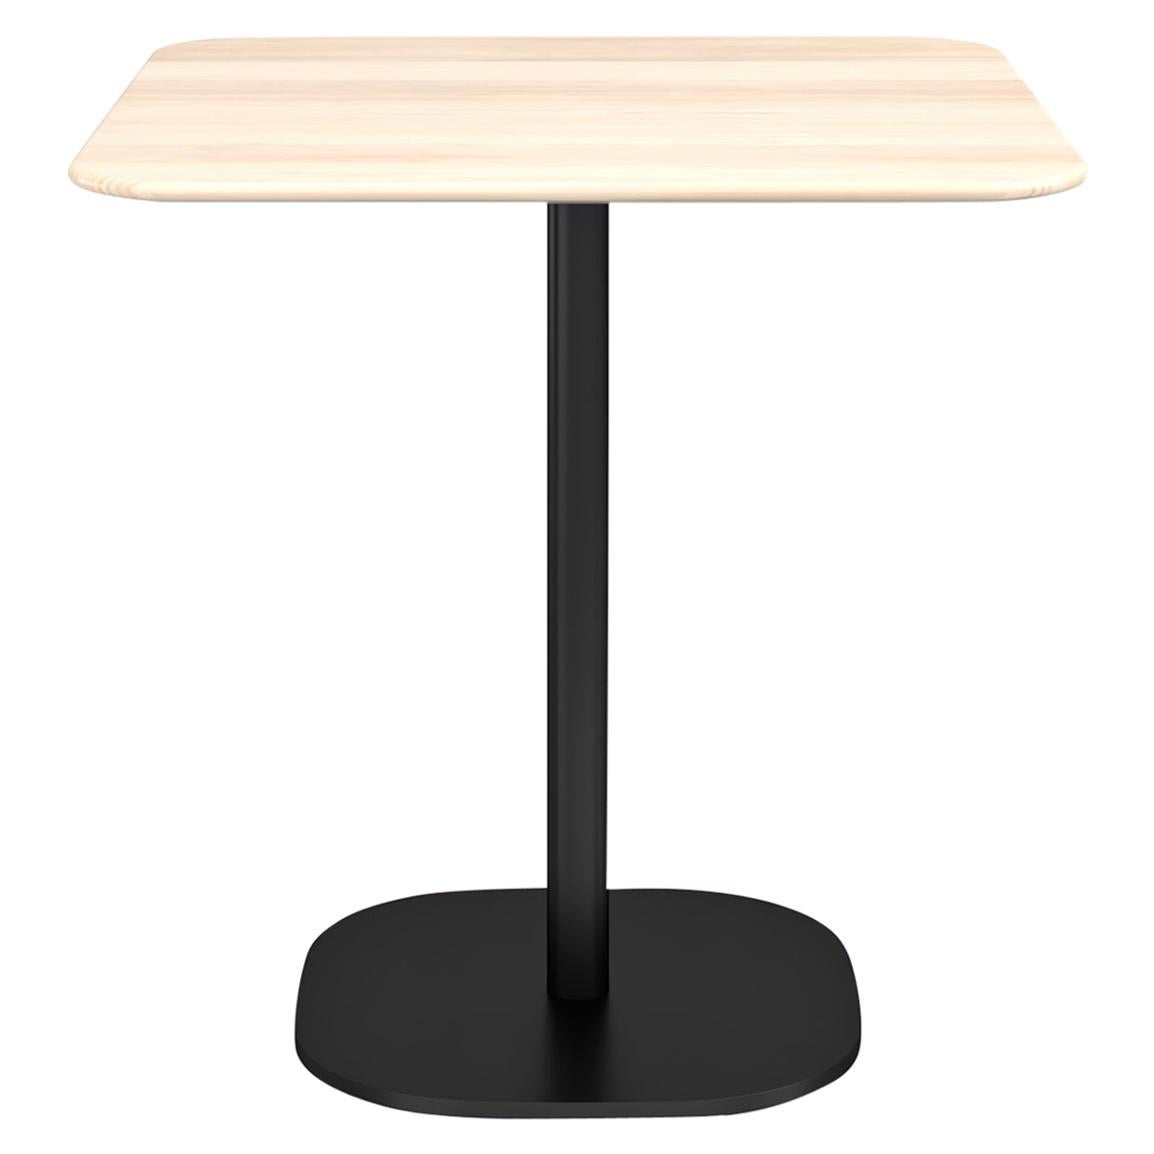 Grande table basse Emeco de 2 pouces avec pieds noirs et plateau en bois par Jasper Morrison